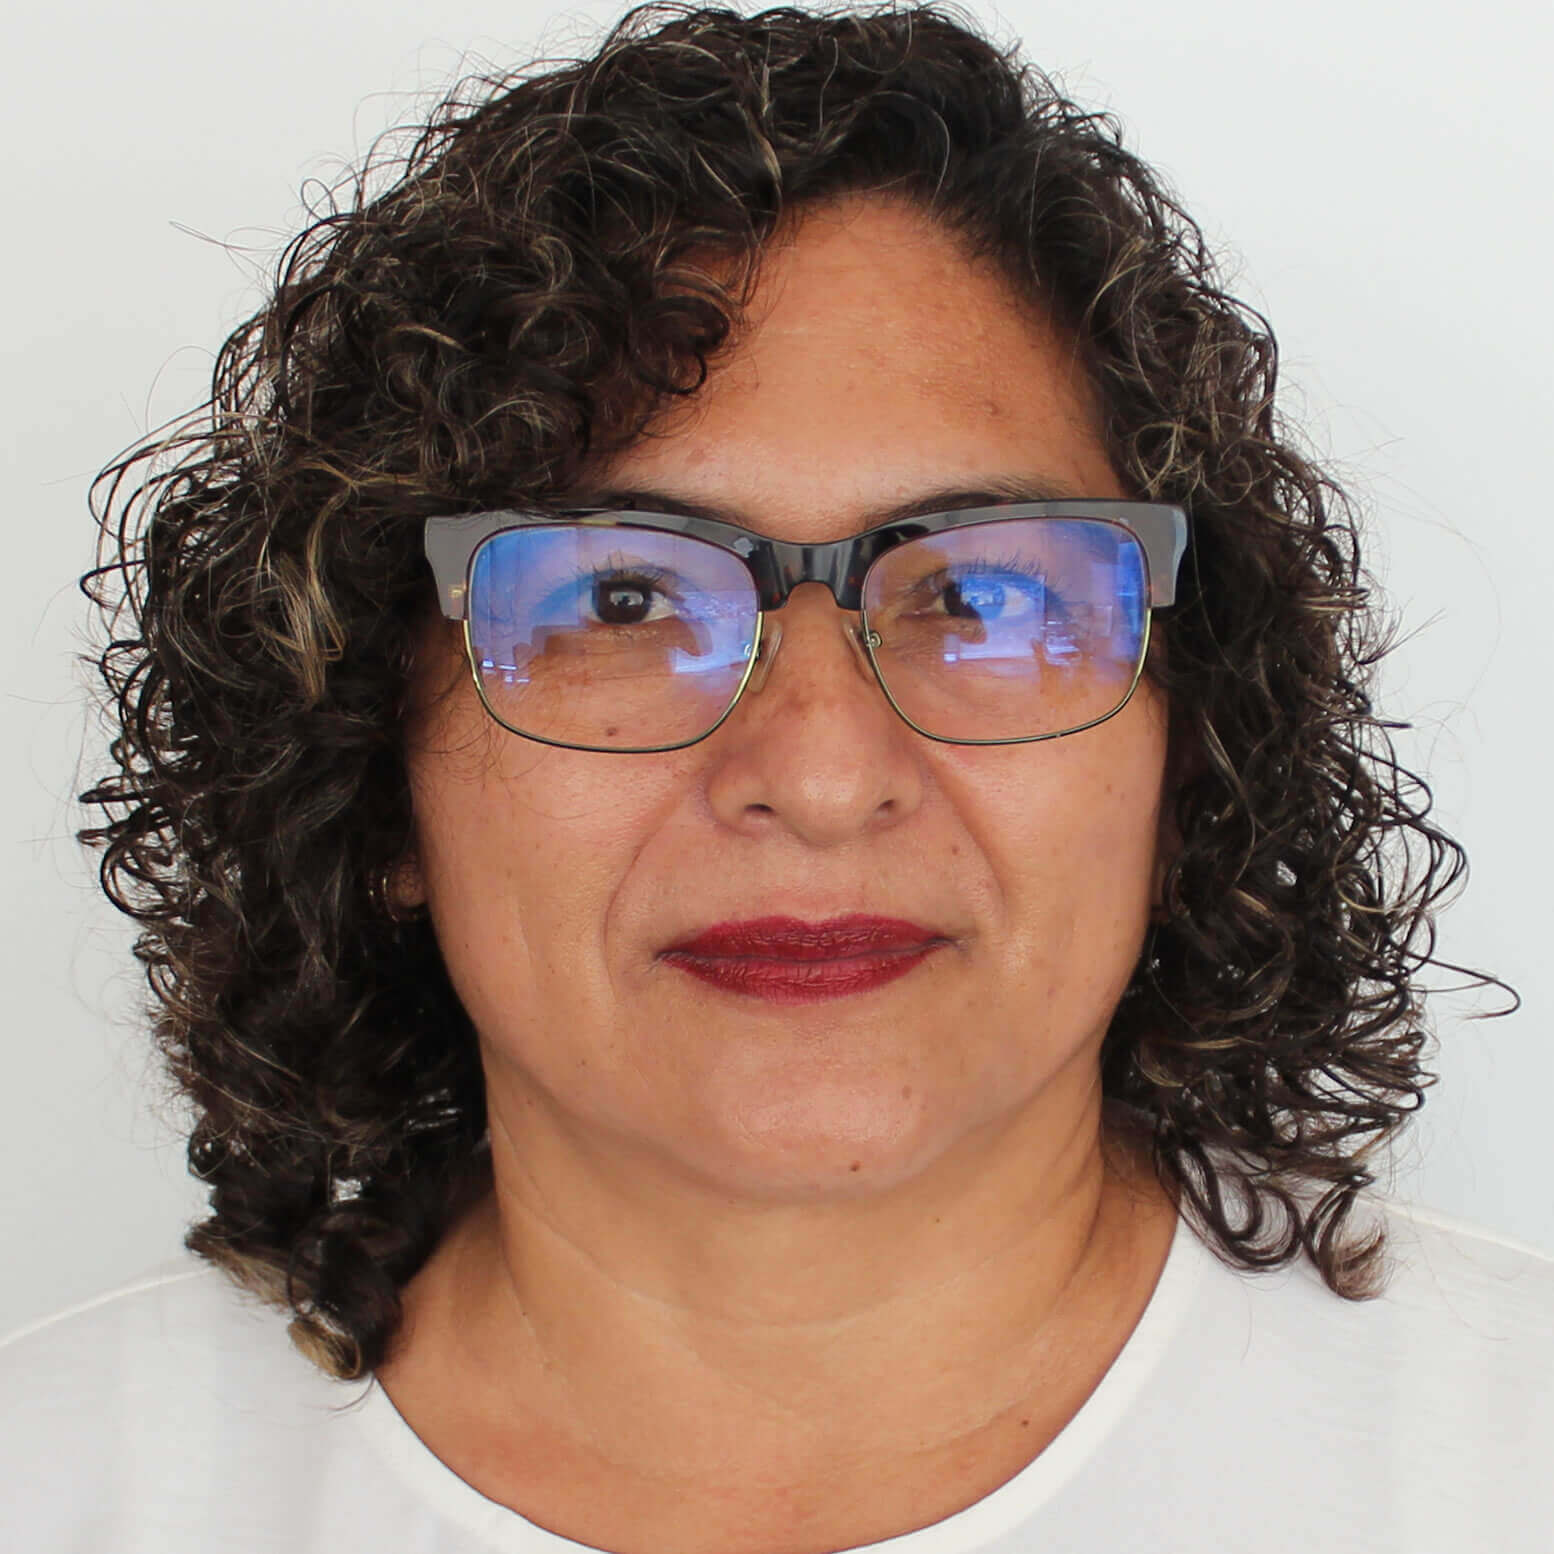 Lic. Marisol Ferra Coutiño | Responsable del Archivo de Trámite de la Unidad de Transparencia